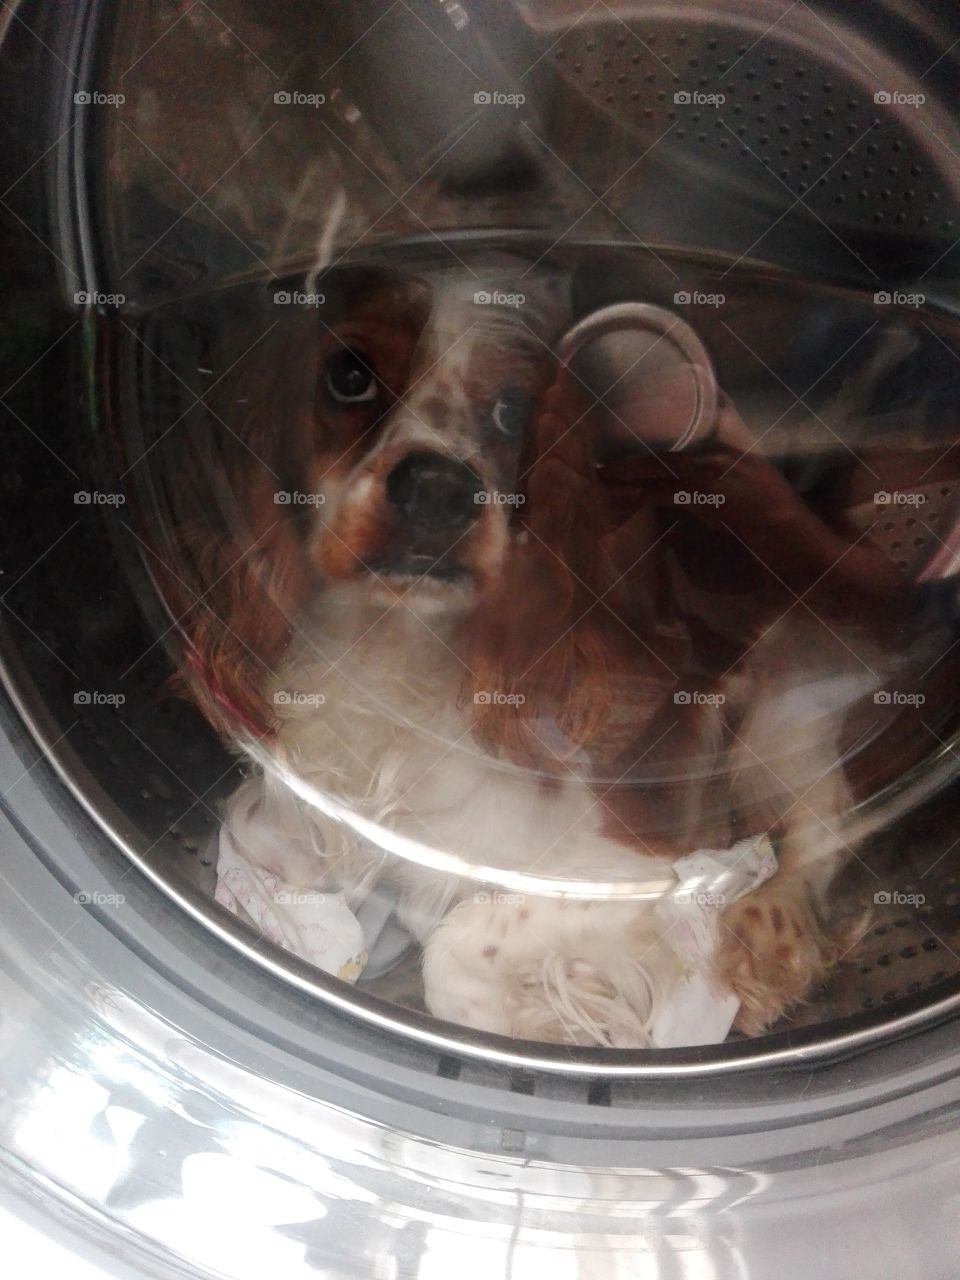 dog washing